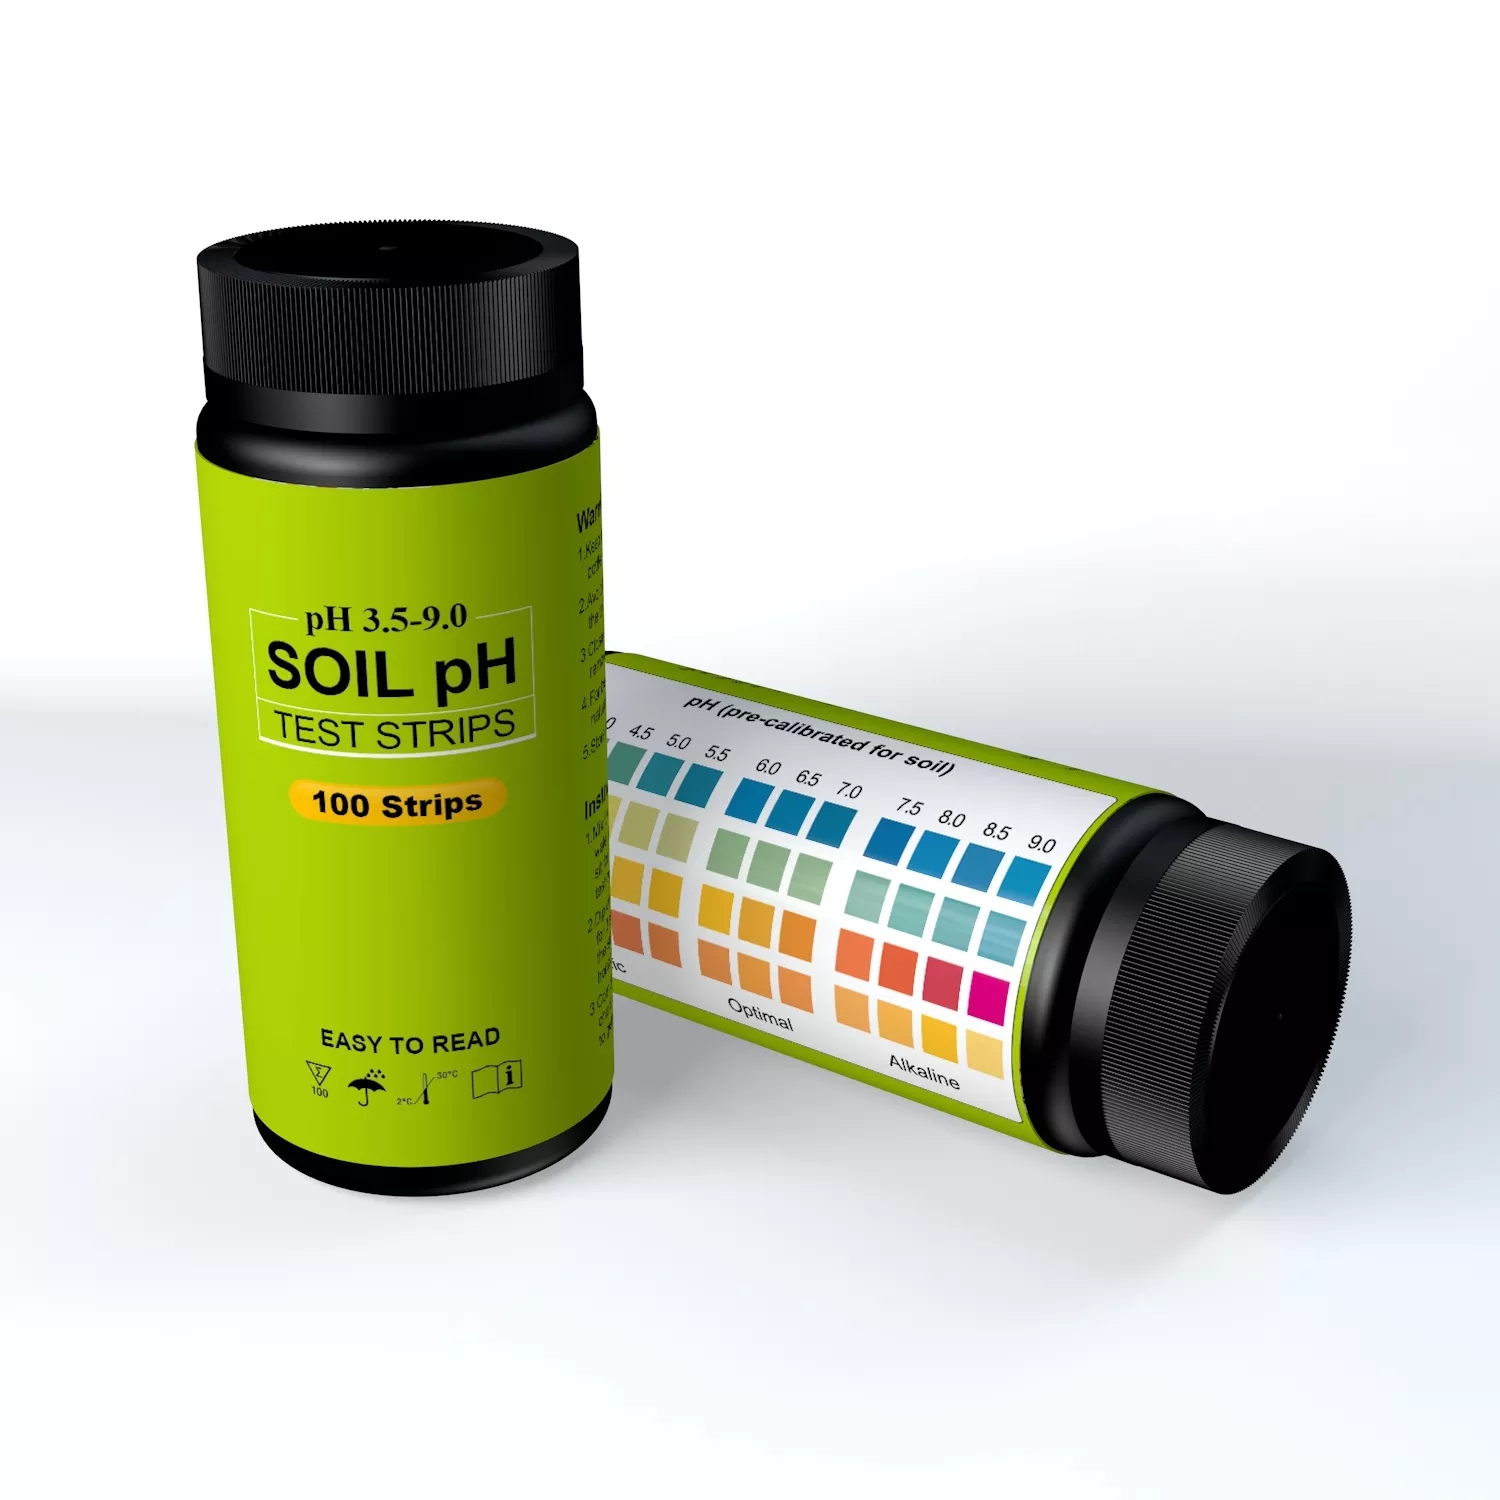 soil ph test strips